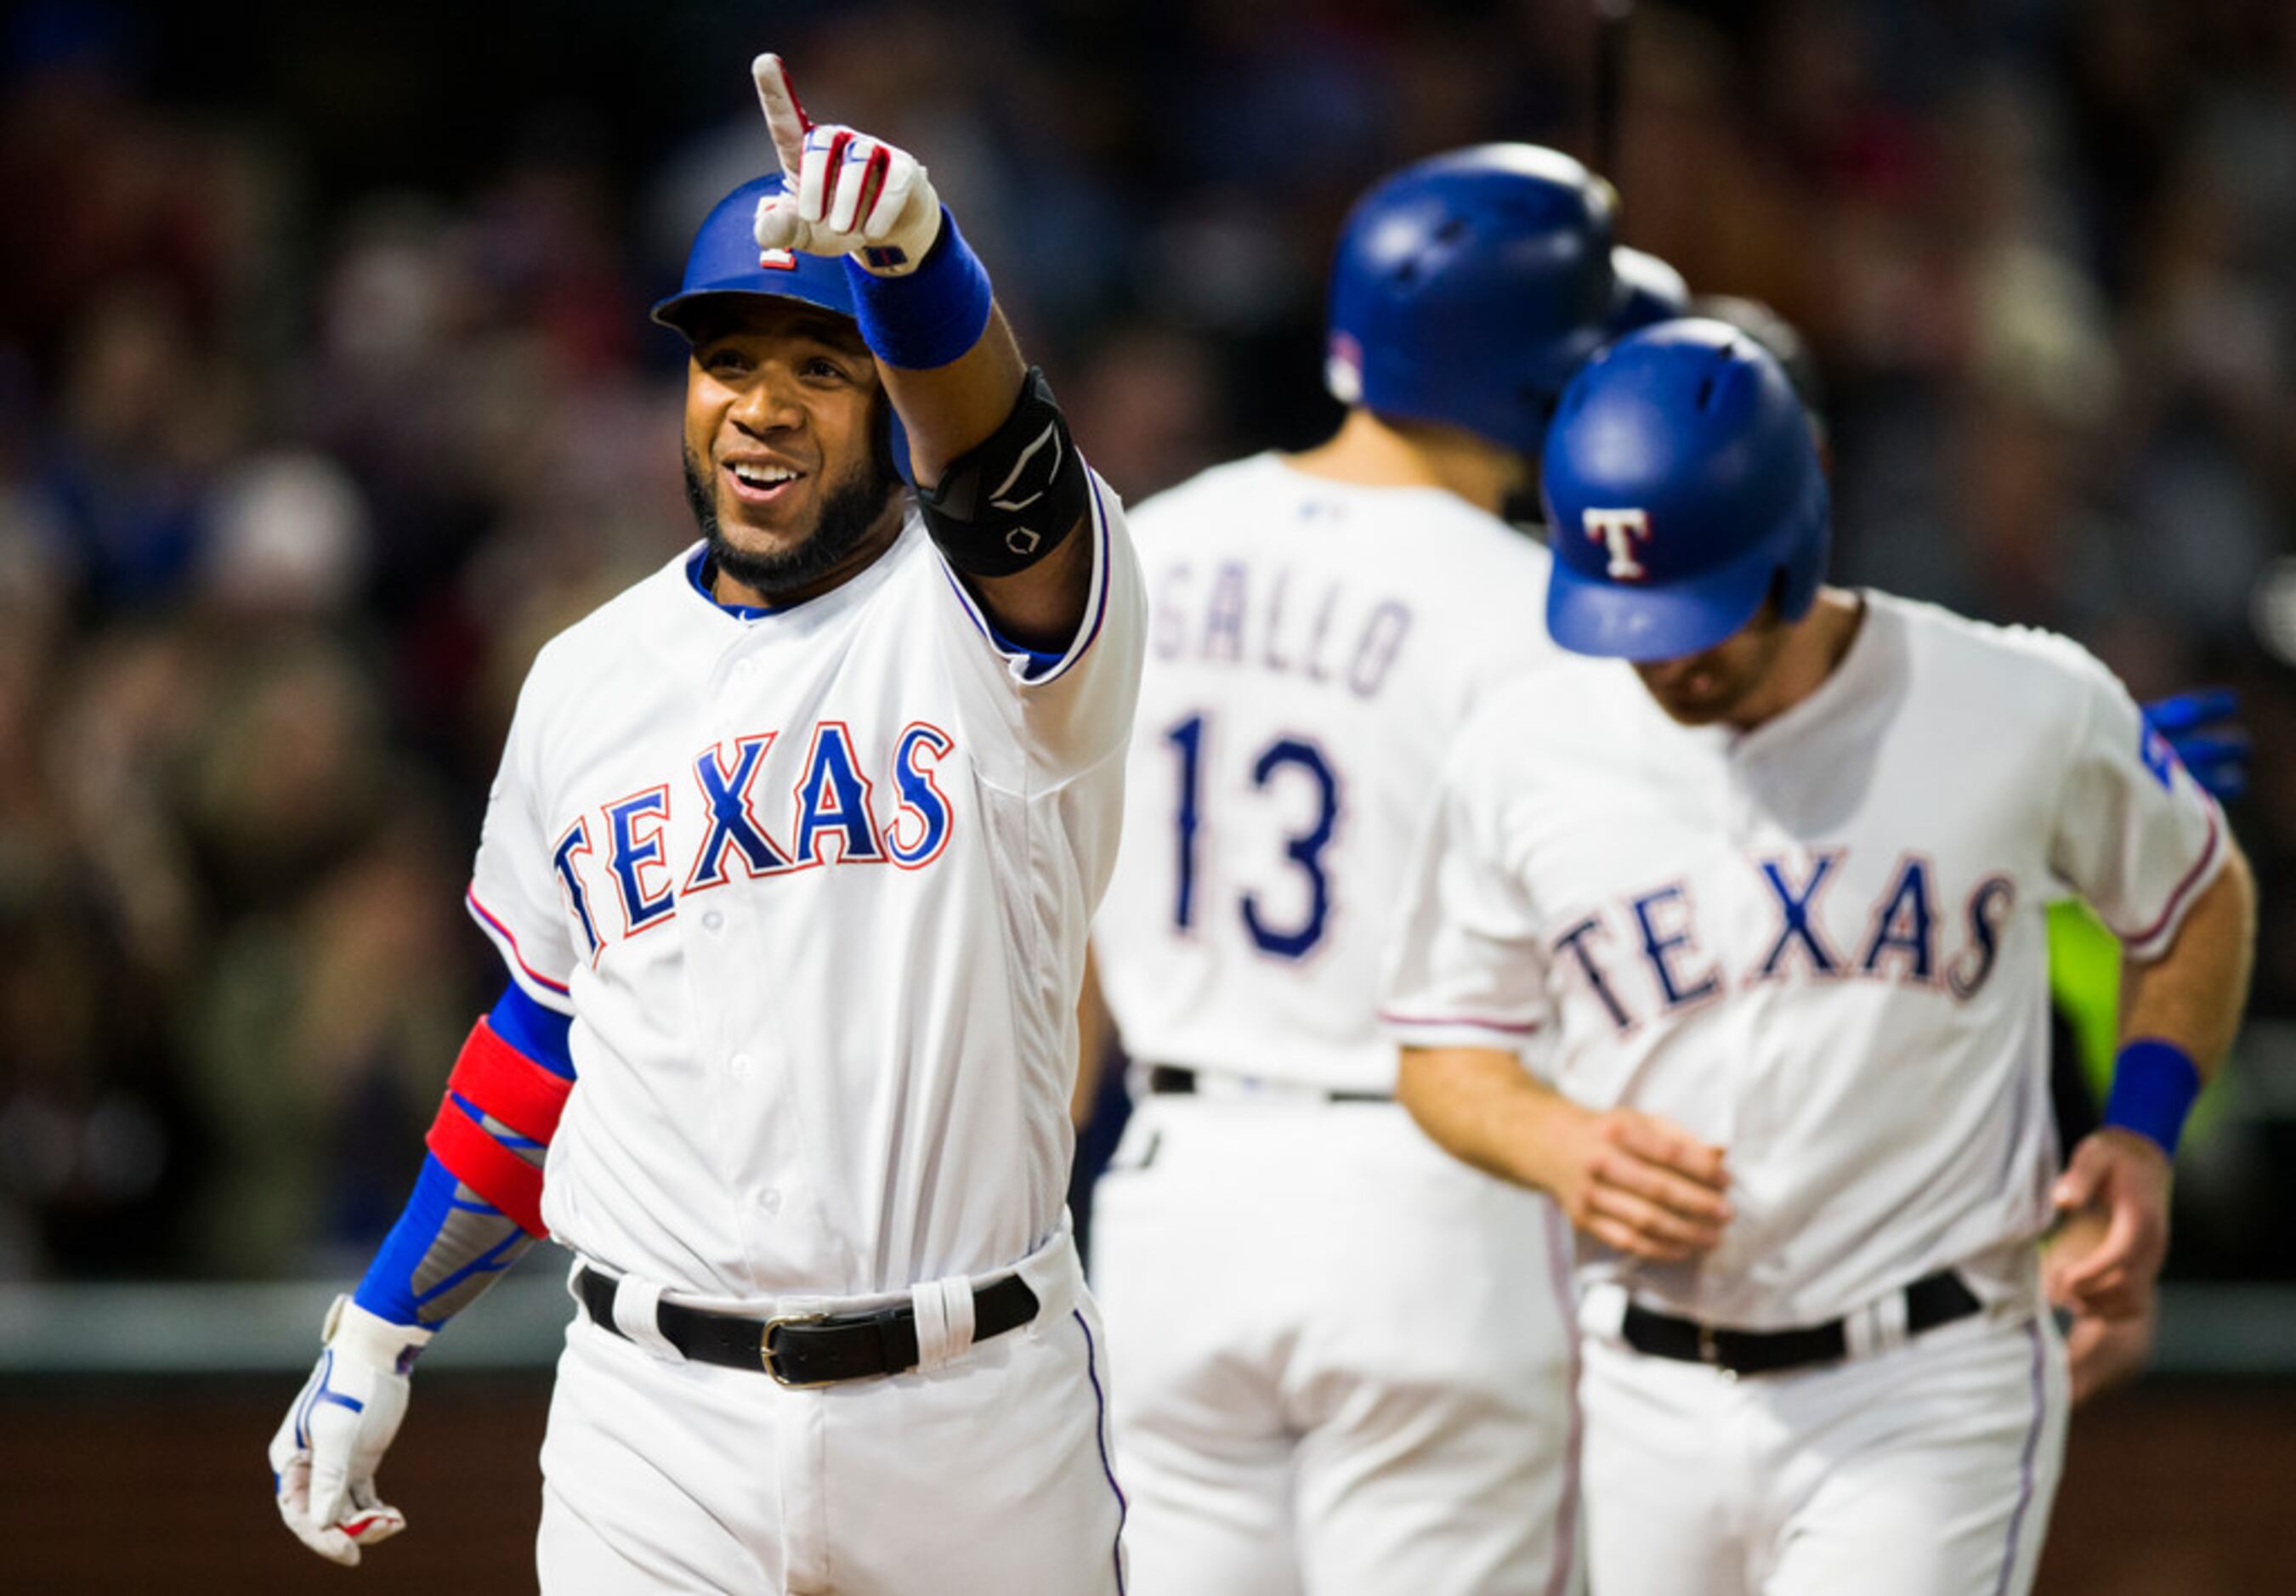 Texas Rangers shortstop Elvis Andrus becomes U.S. citizen